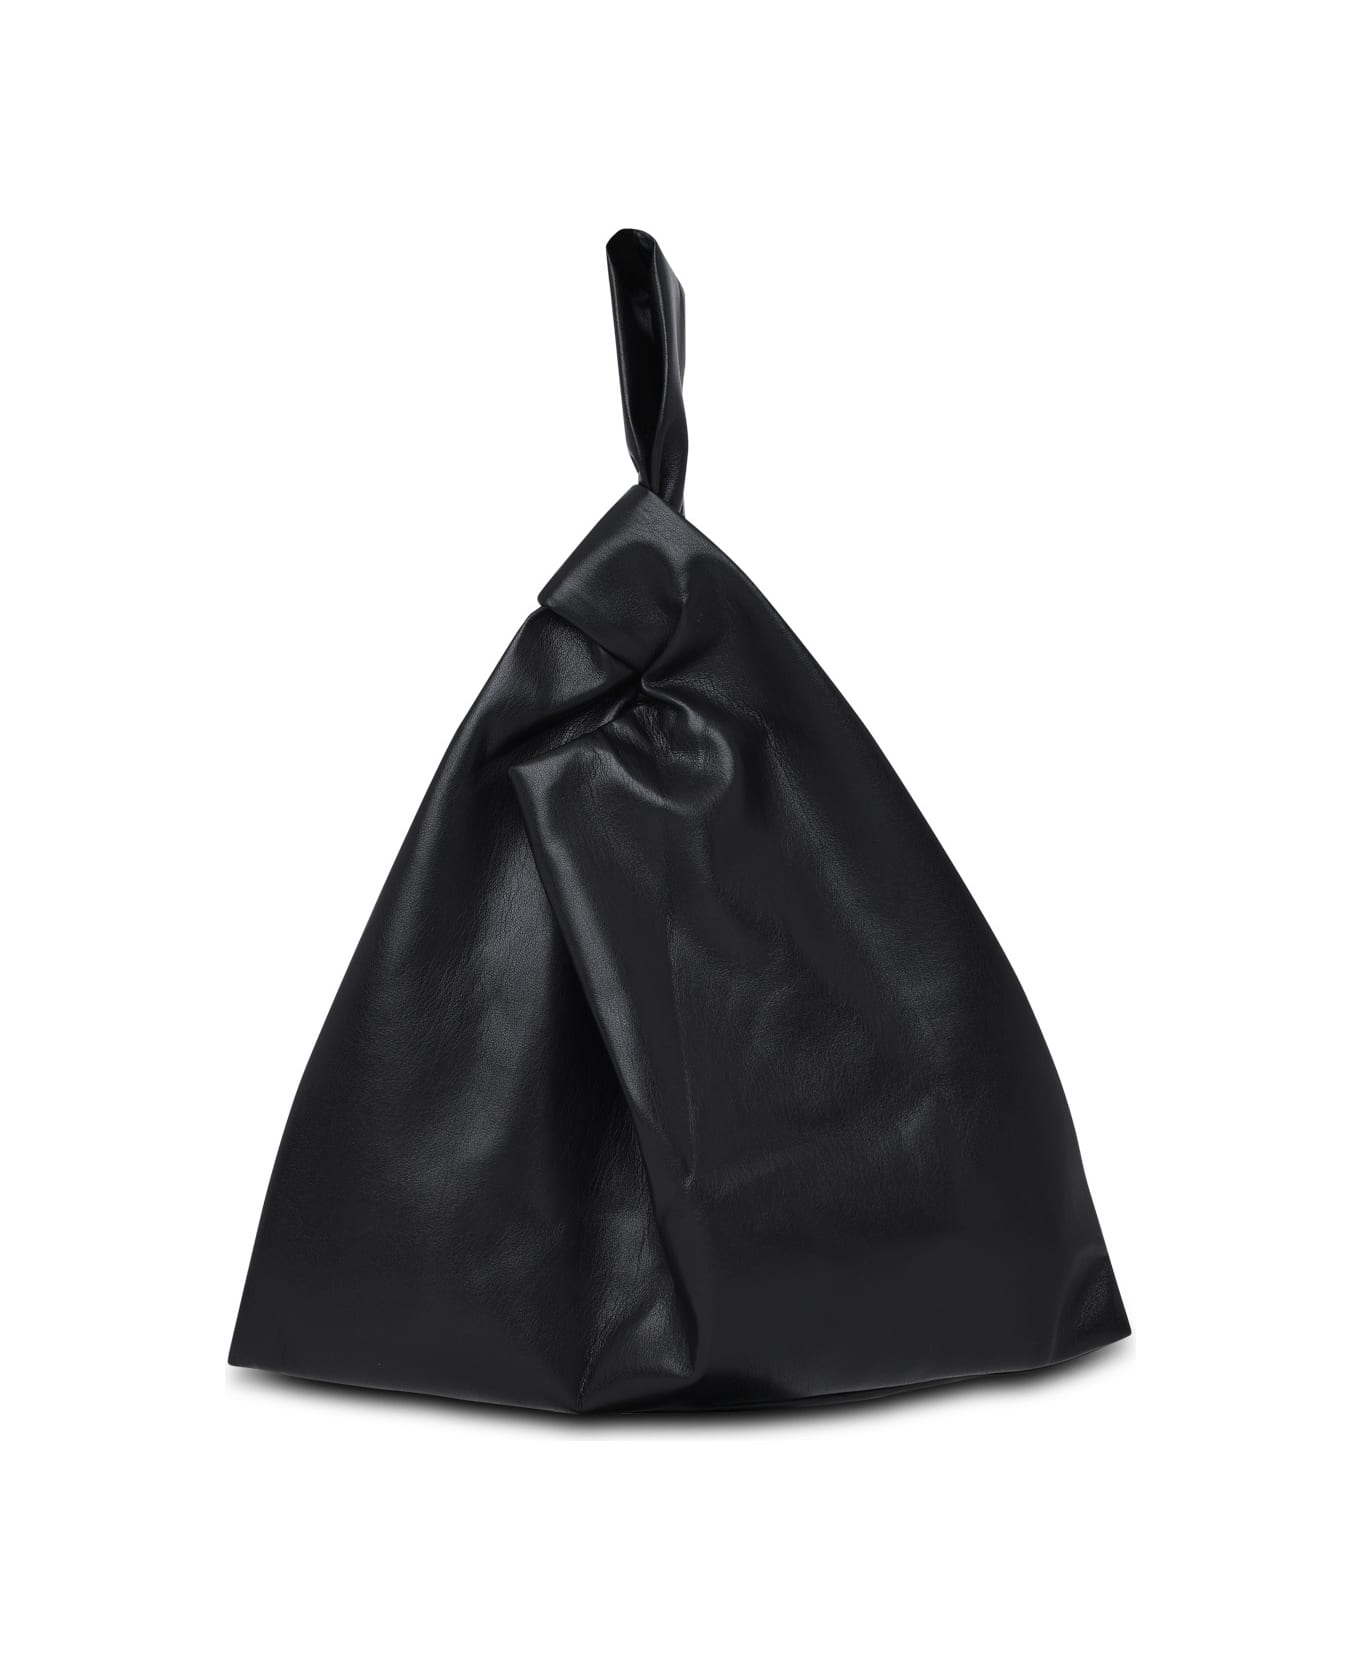 Nanushka Black Vegan Leather Jen Bag - Black